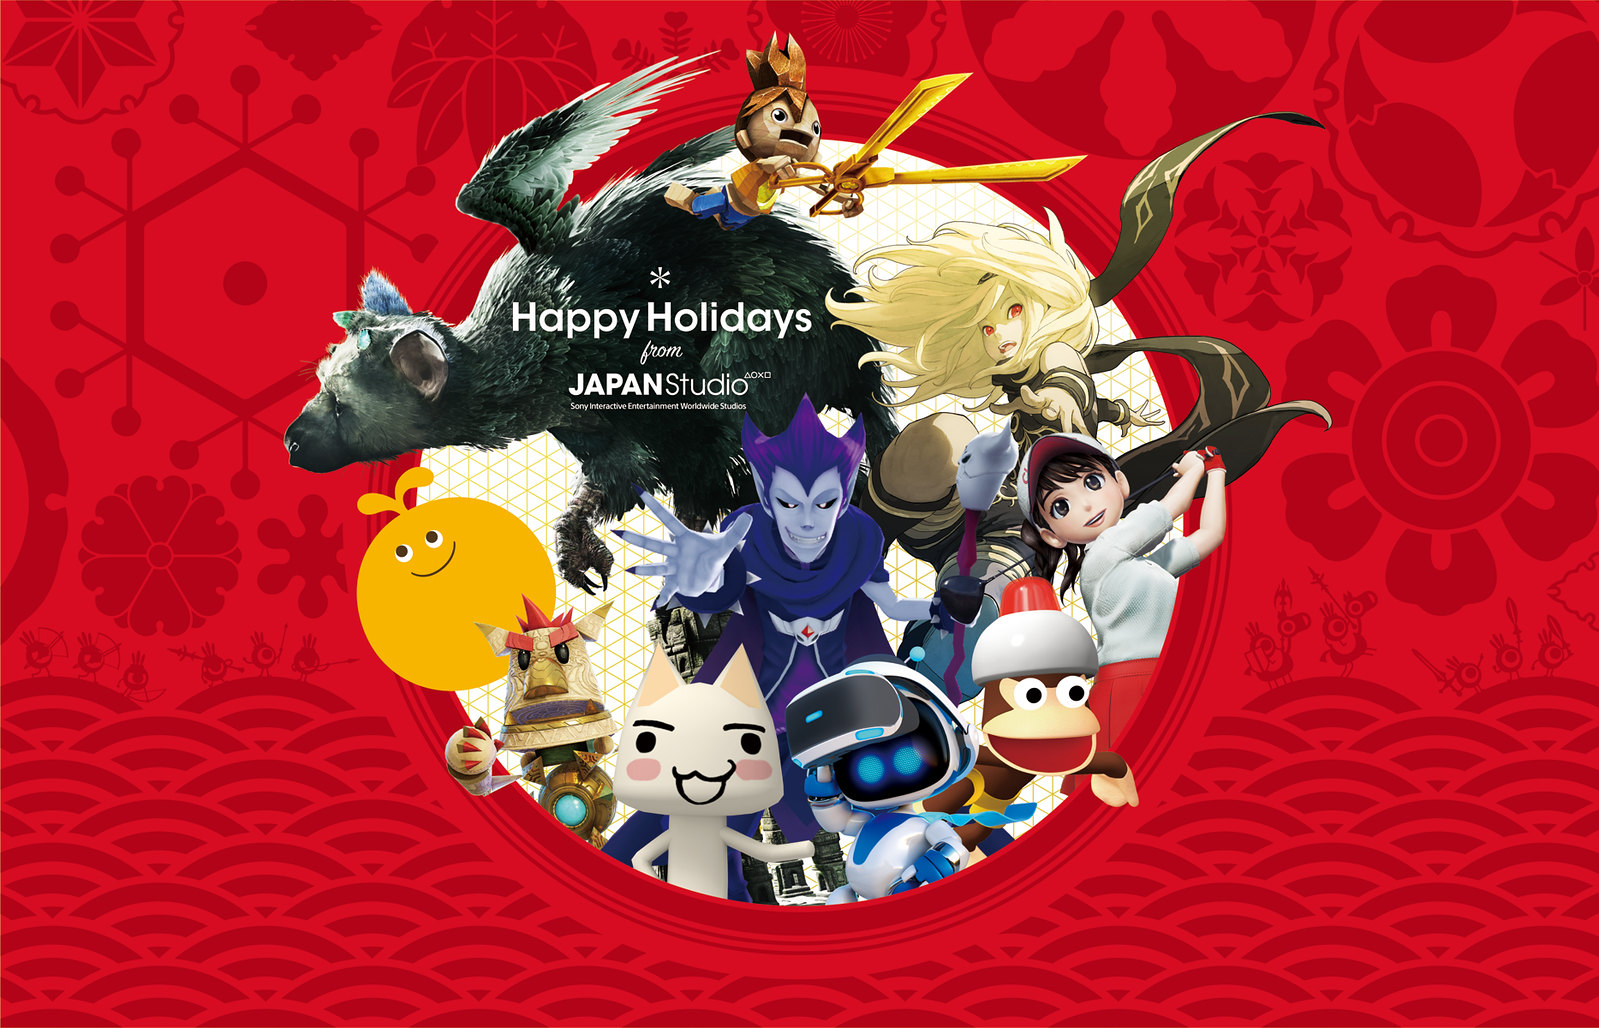 49205514231 714462e160 h - Frohe Weihnachten vom PlayStation.Blog und den Teams rund um die Welt